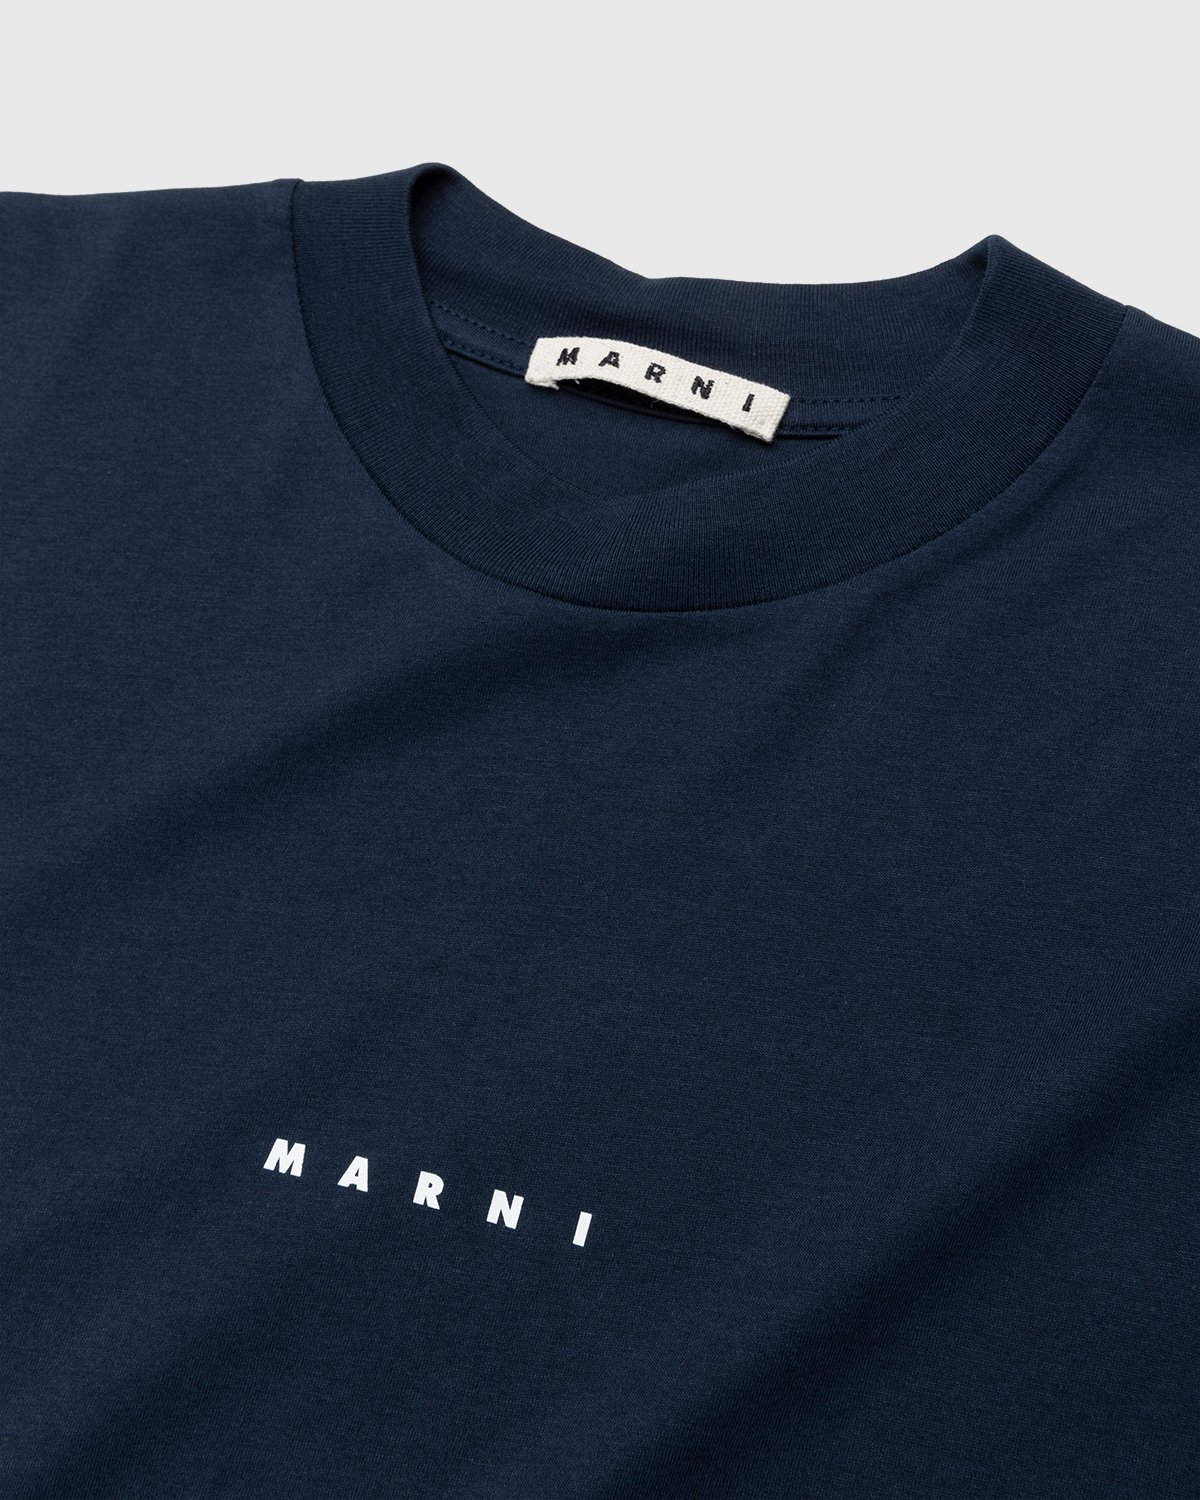 Marni - Logo T-Shirt Navy - Clothing - Blue - Image 3